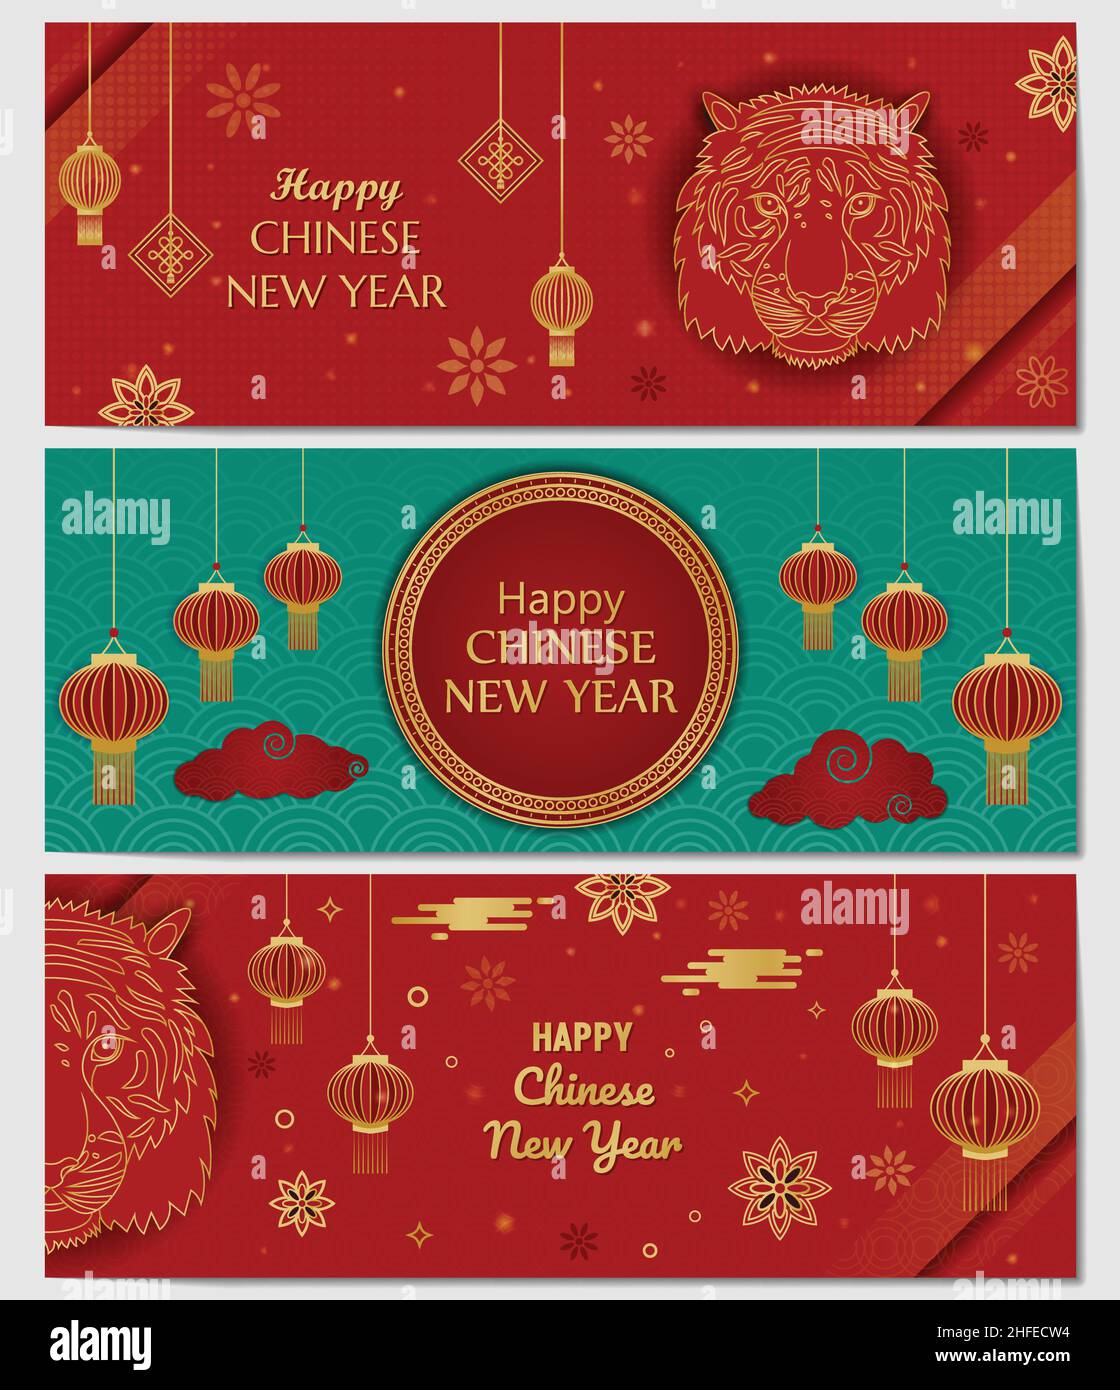 Happy Chinese New Year Tiger Banner Collection ensemble de 3 fonds d'écran traditionnel chinois doré rouge cadre accueil avec lanternes et nuages Illustration de Vecteur